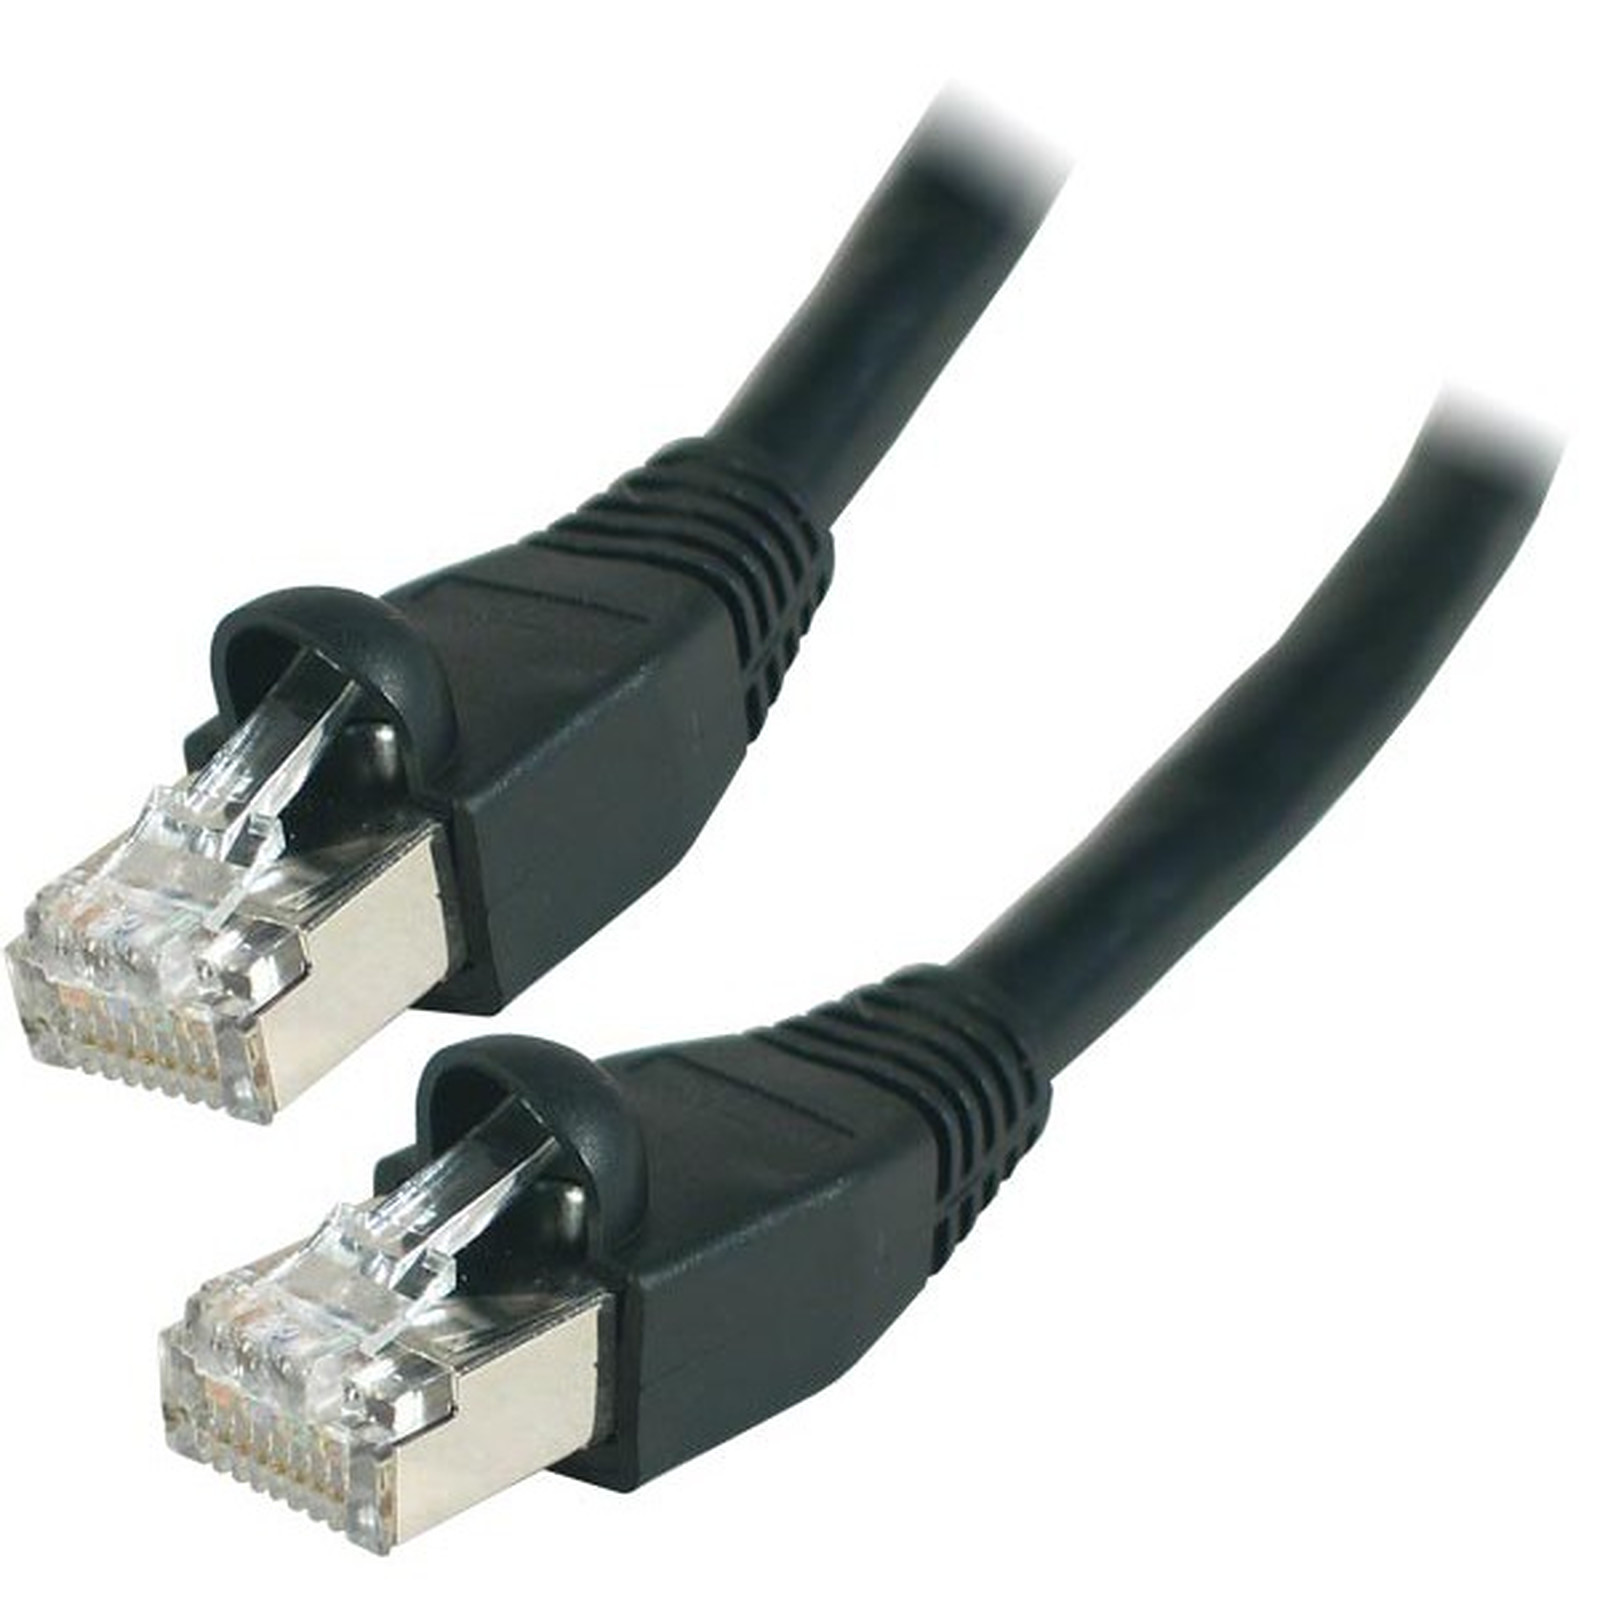 Cable RJ45 categorie 6 S/FTP 3 m (Noir) - Cable RJ45 Generique